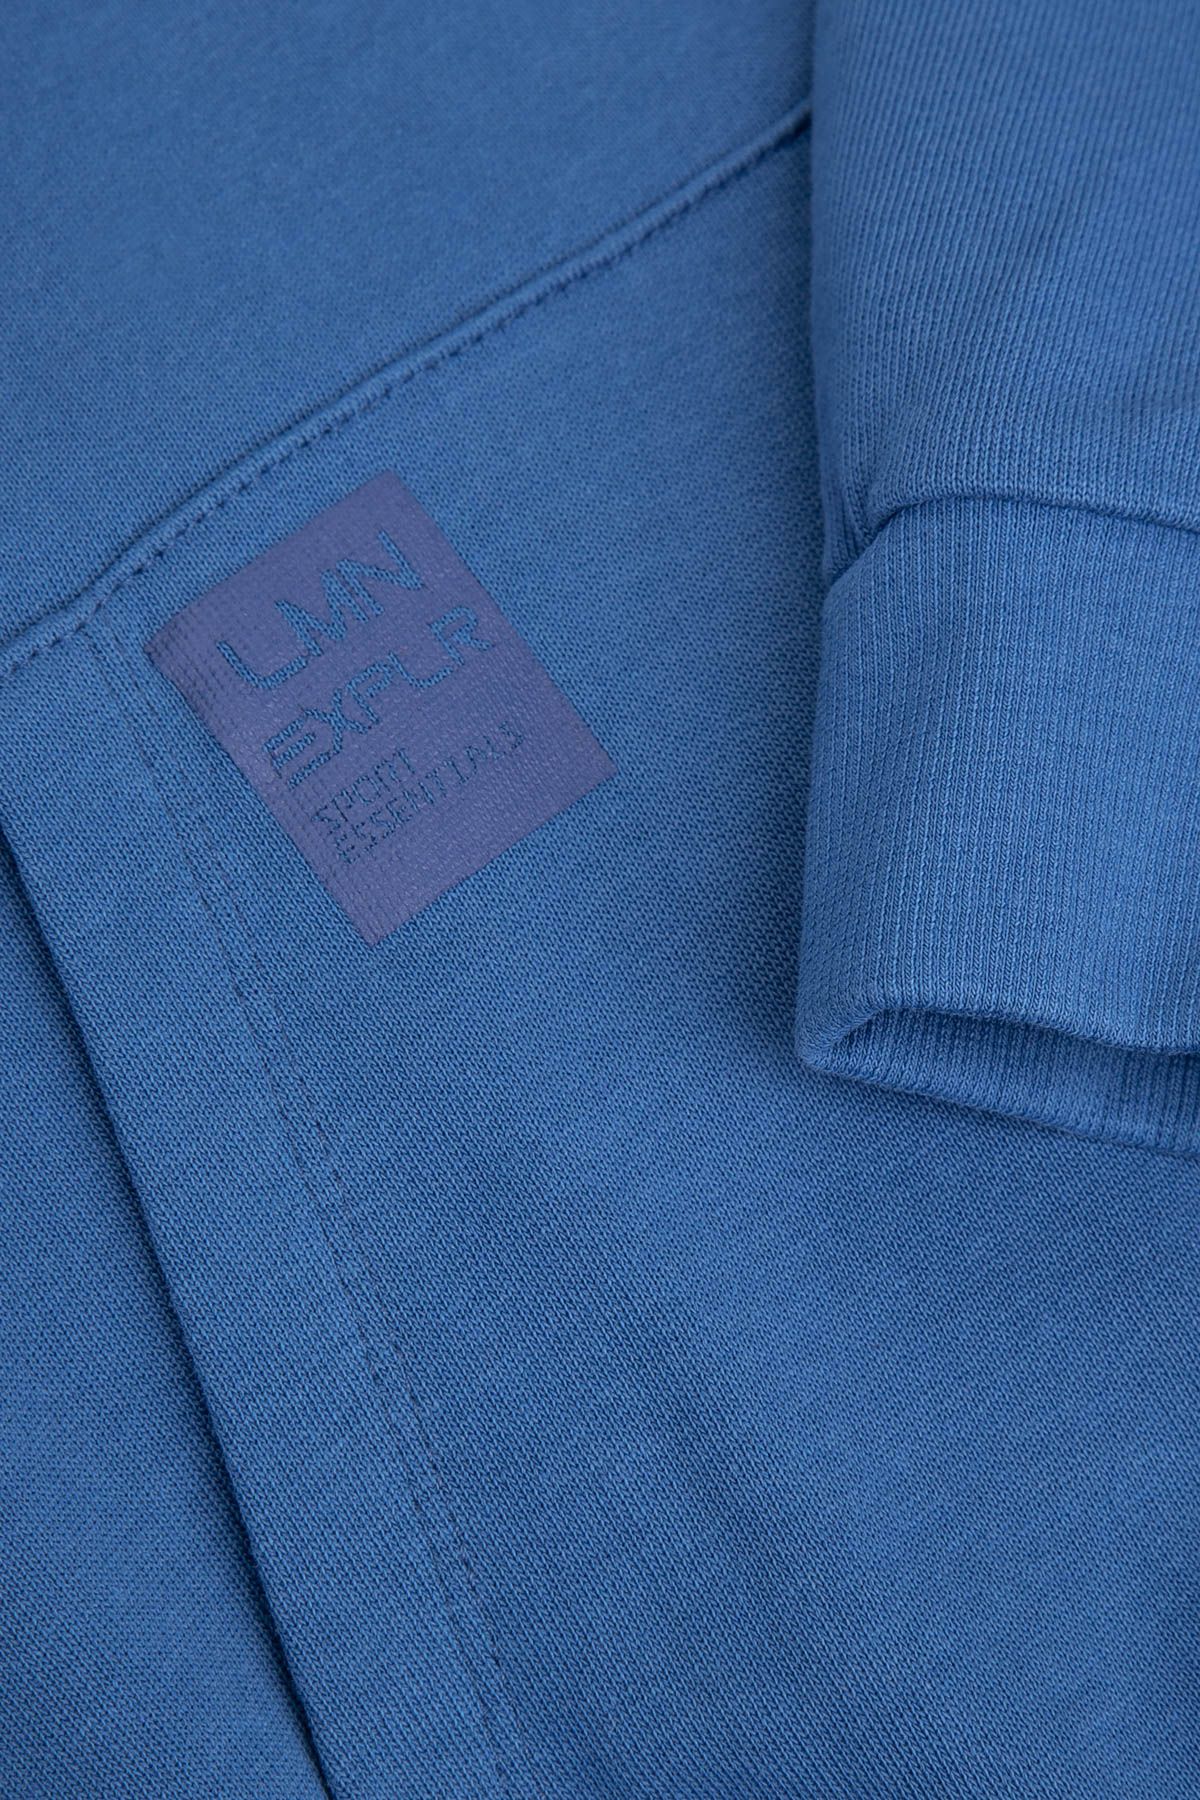 Bluza nierozpinana chłopięca oversize z kapturem 2215456